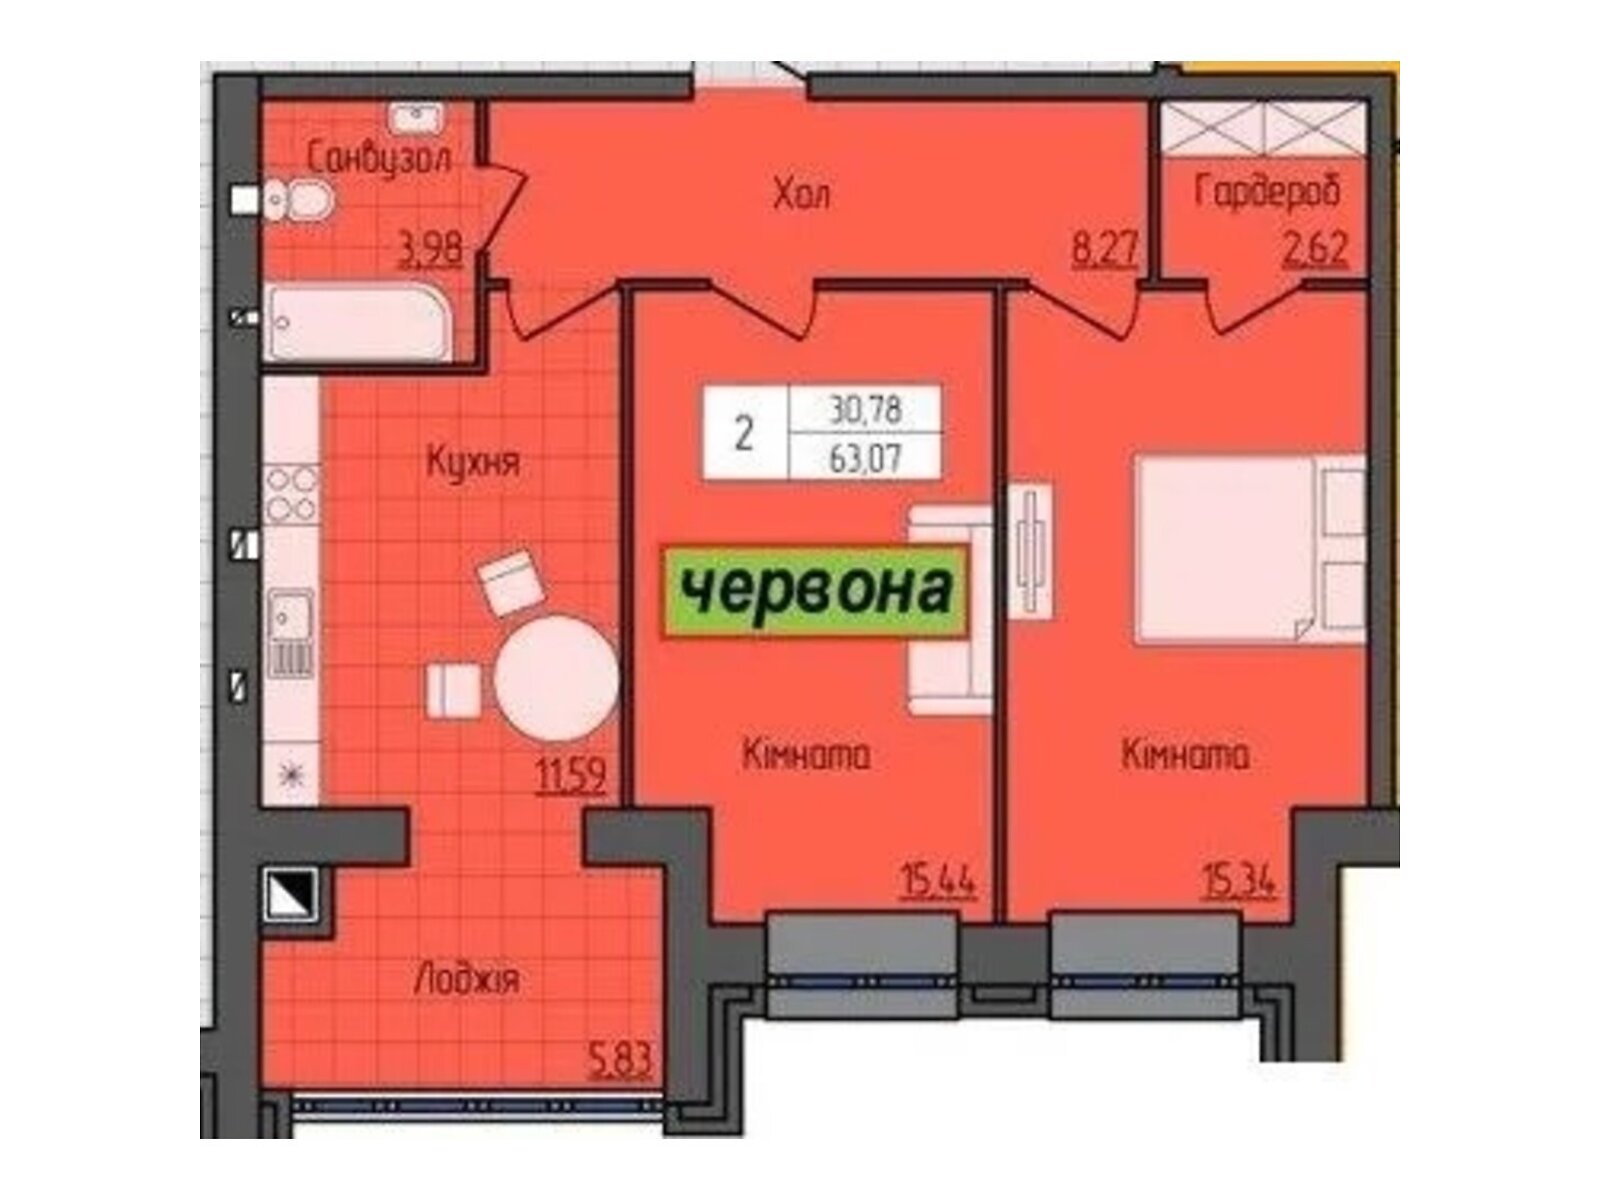 Продажа двухкомнатной квартиры в Житомире, на ул. Домбровского 3, фото 1